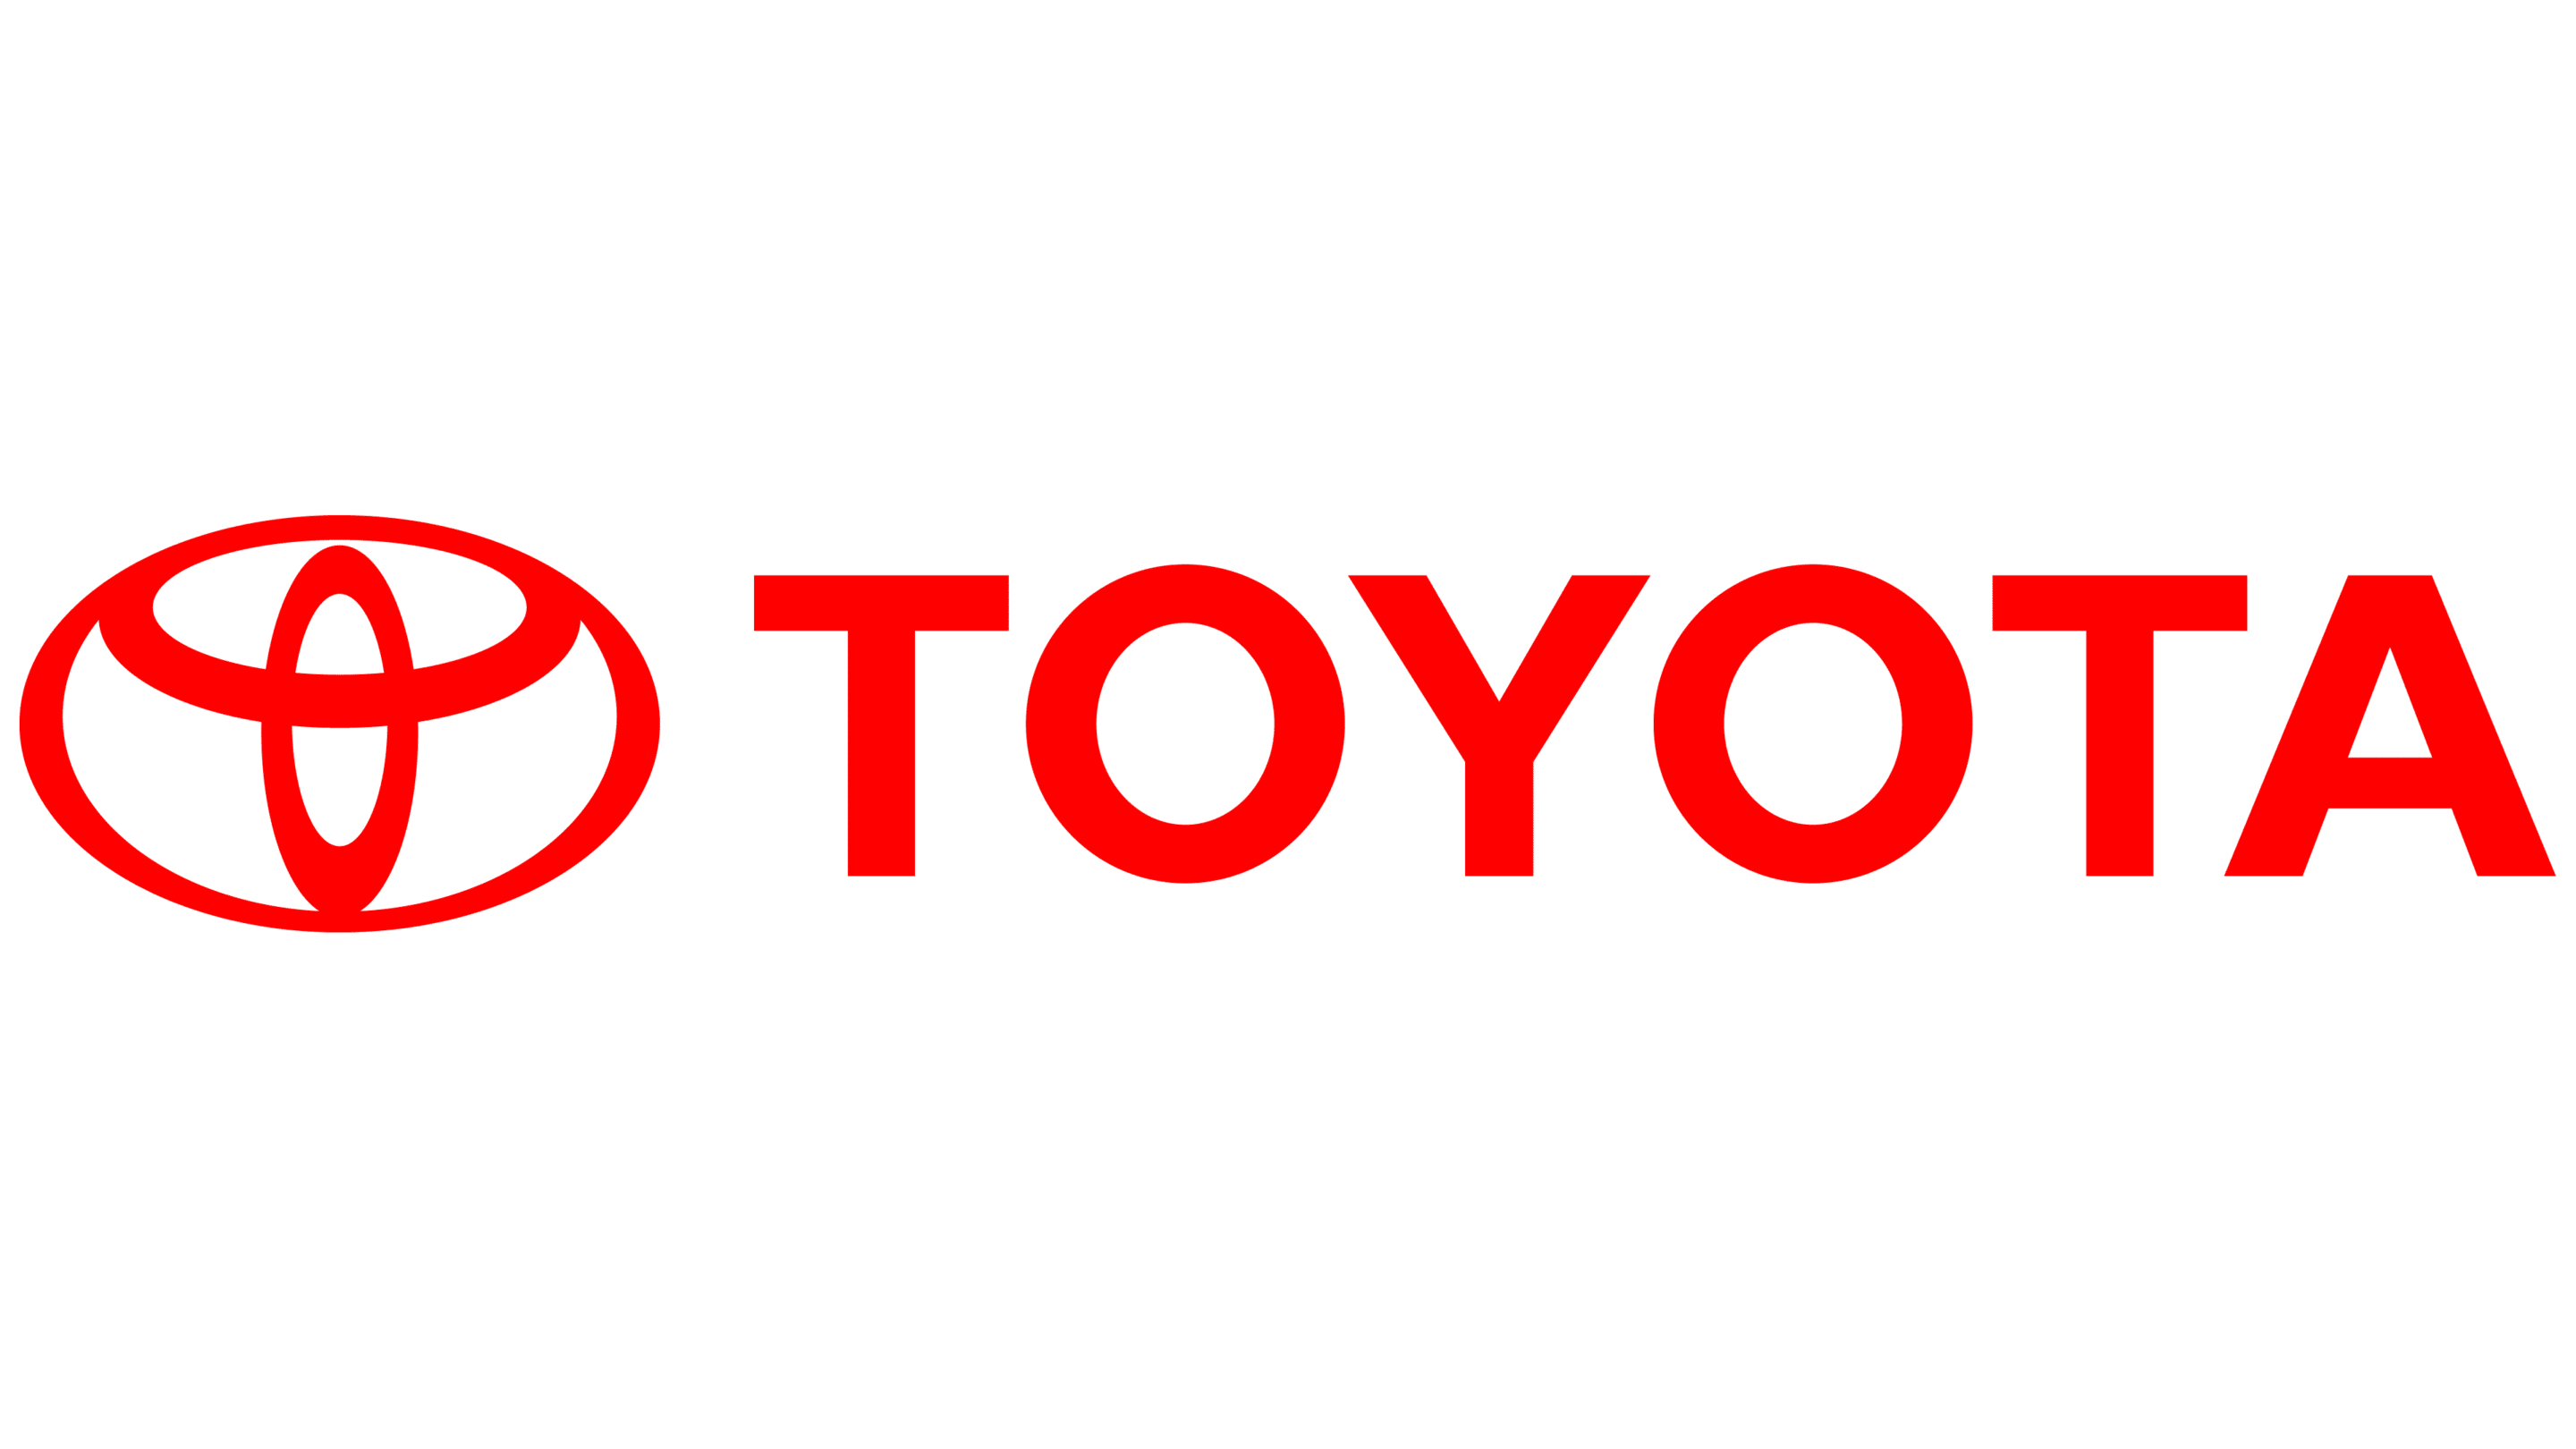 Toyota-Logo (1)